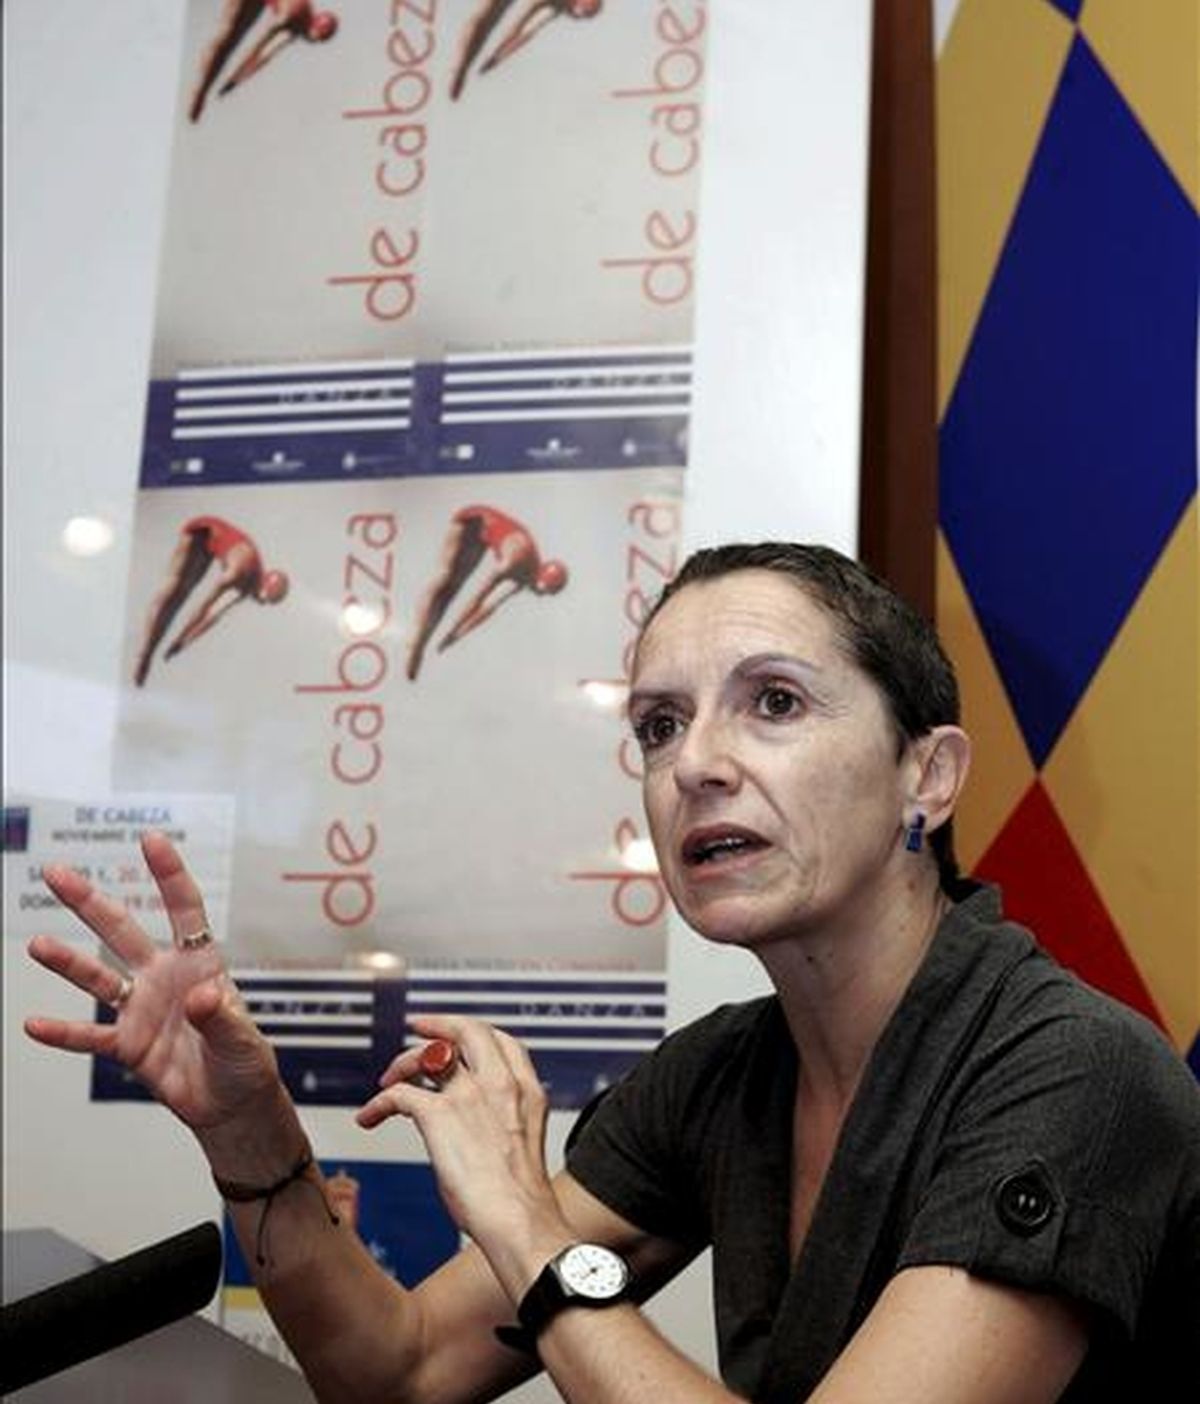 La bailarina y coreógrafa Teresa Nieto, durante una rueda de prensa para presentar su espectáculo "De Cabeza". EFE/Archivo